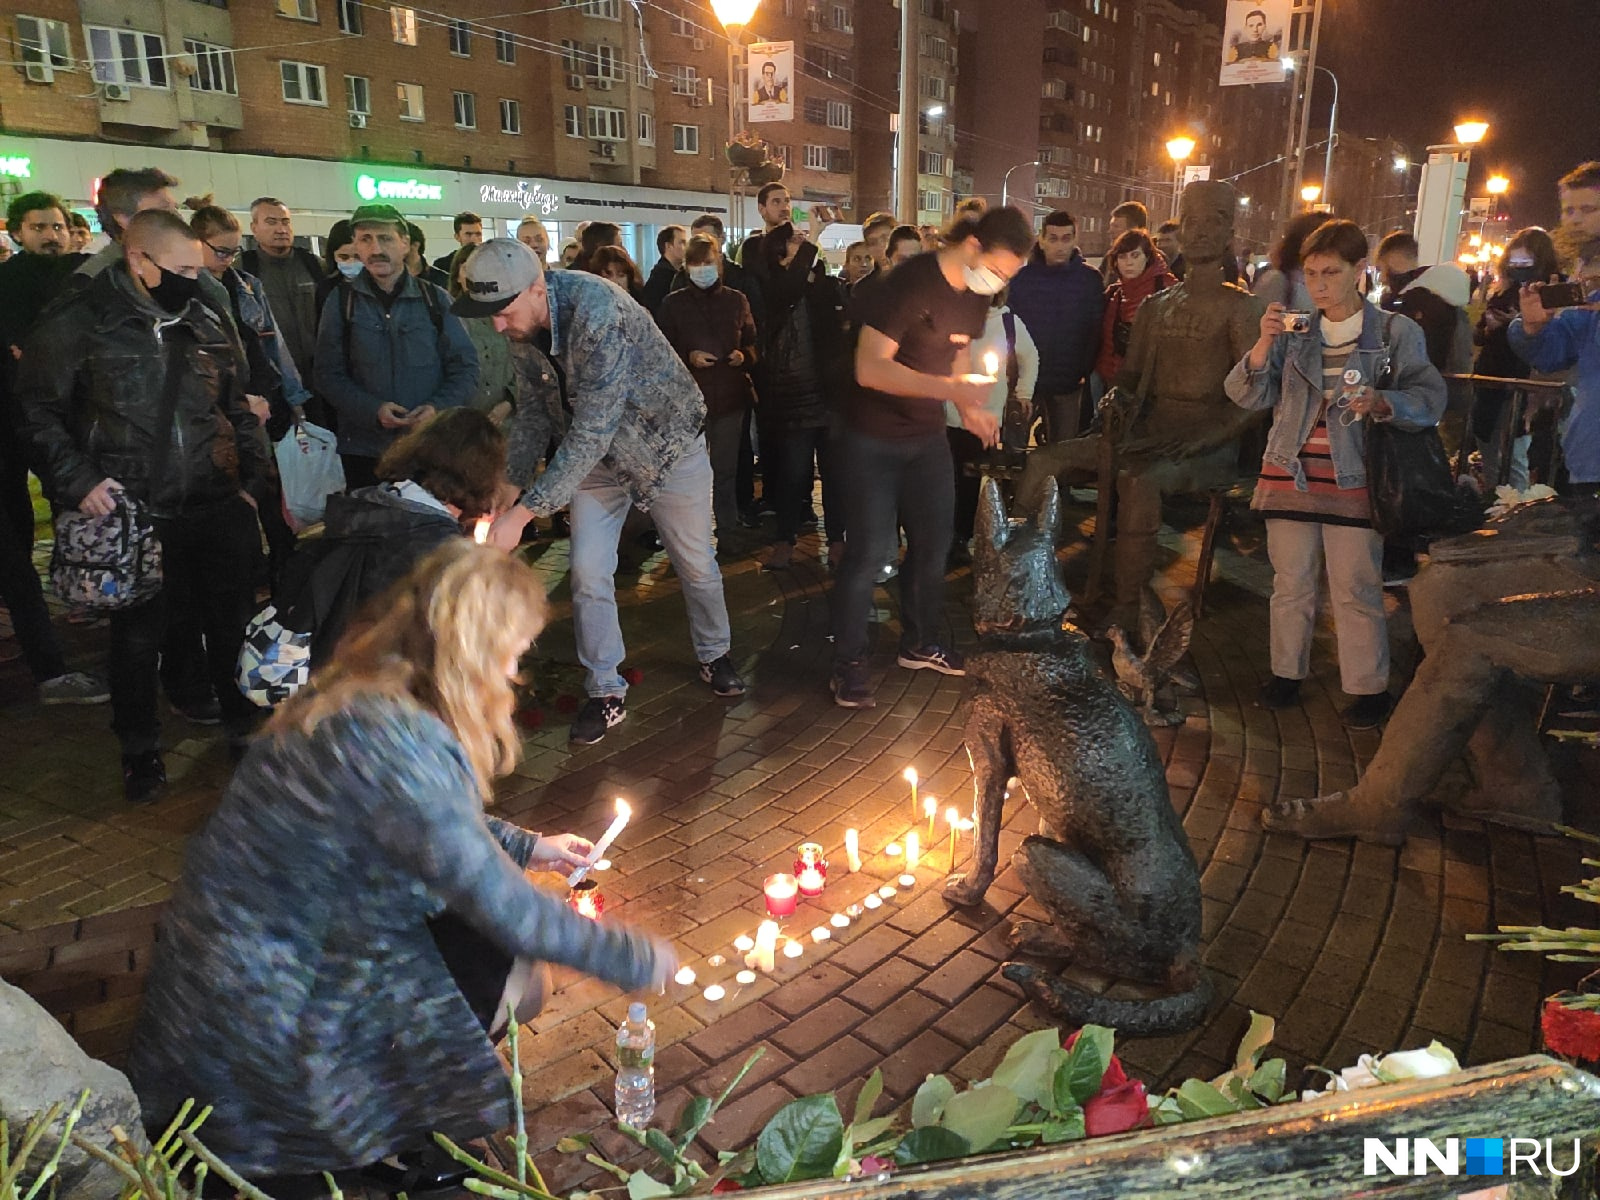 Нижегородцы приносят свечи и цветы, общаются и пытаются понять, что стало причиной этого непоправимого решения 